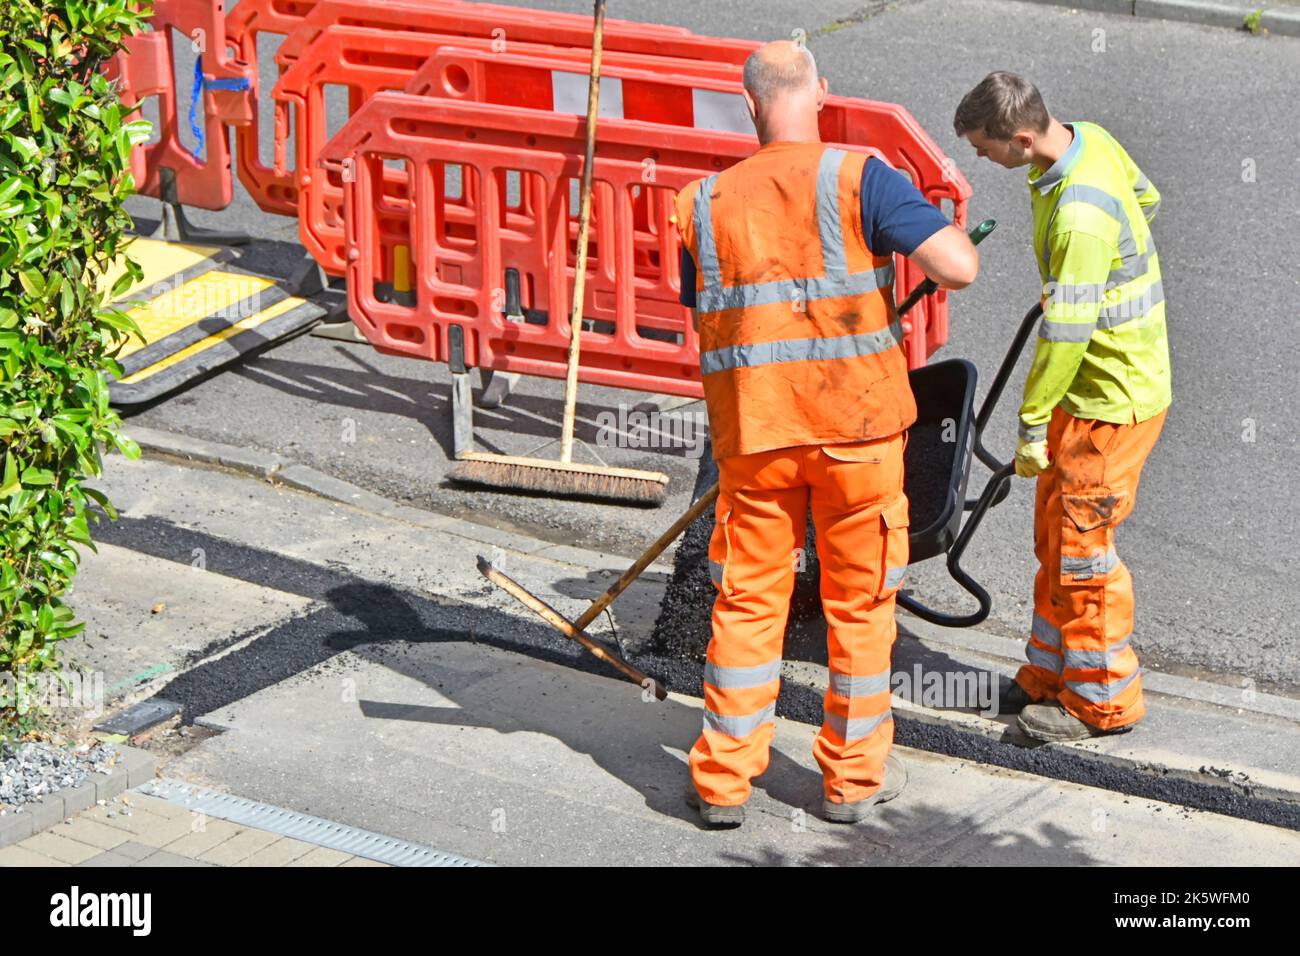 Gli operai ribaltano il materiale di pavimentazione di tipo tarmac dalla carriola per ripristinare la stretta fossa di pavimentazione dopo la posa sotterranea di cavi a banda larga in fibra ottica nel Regno Unito Foto Stock